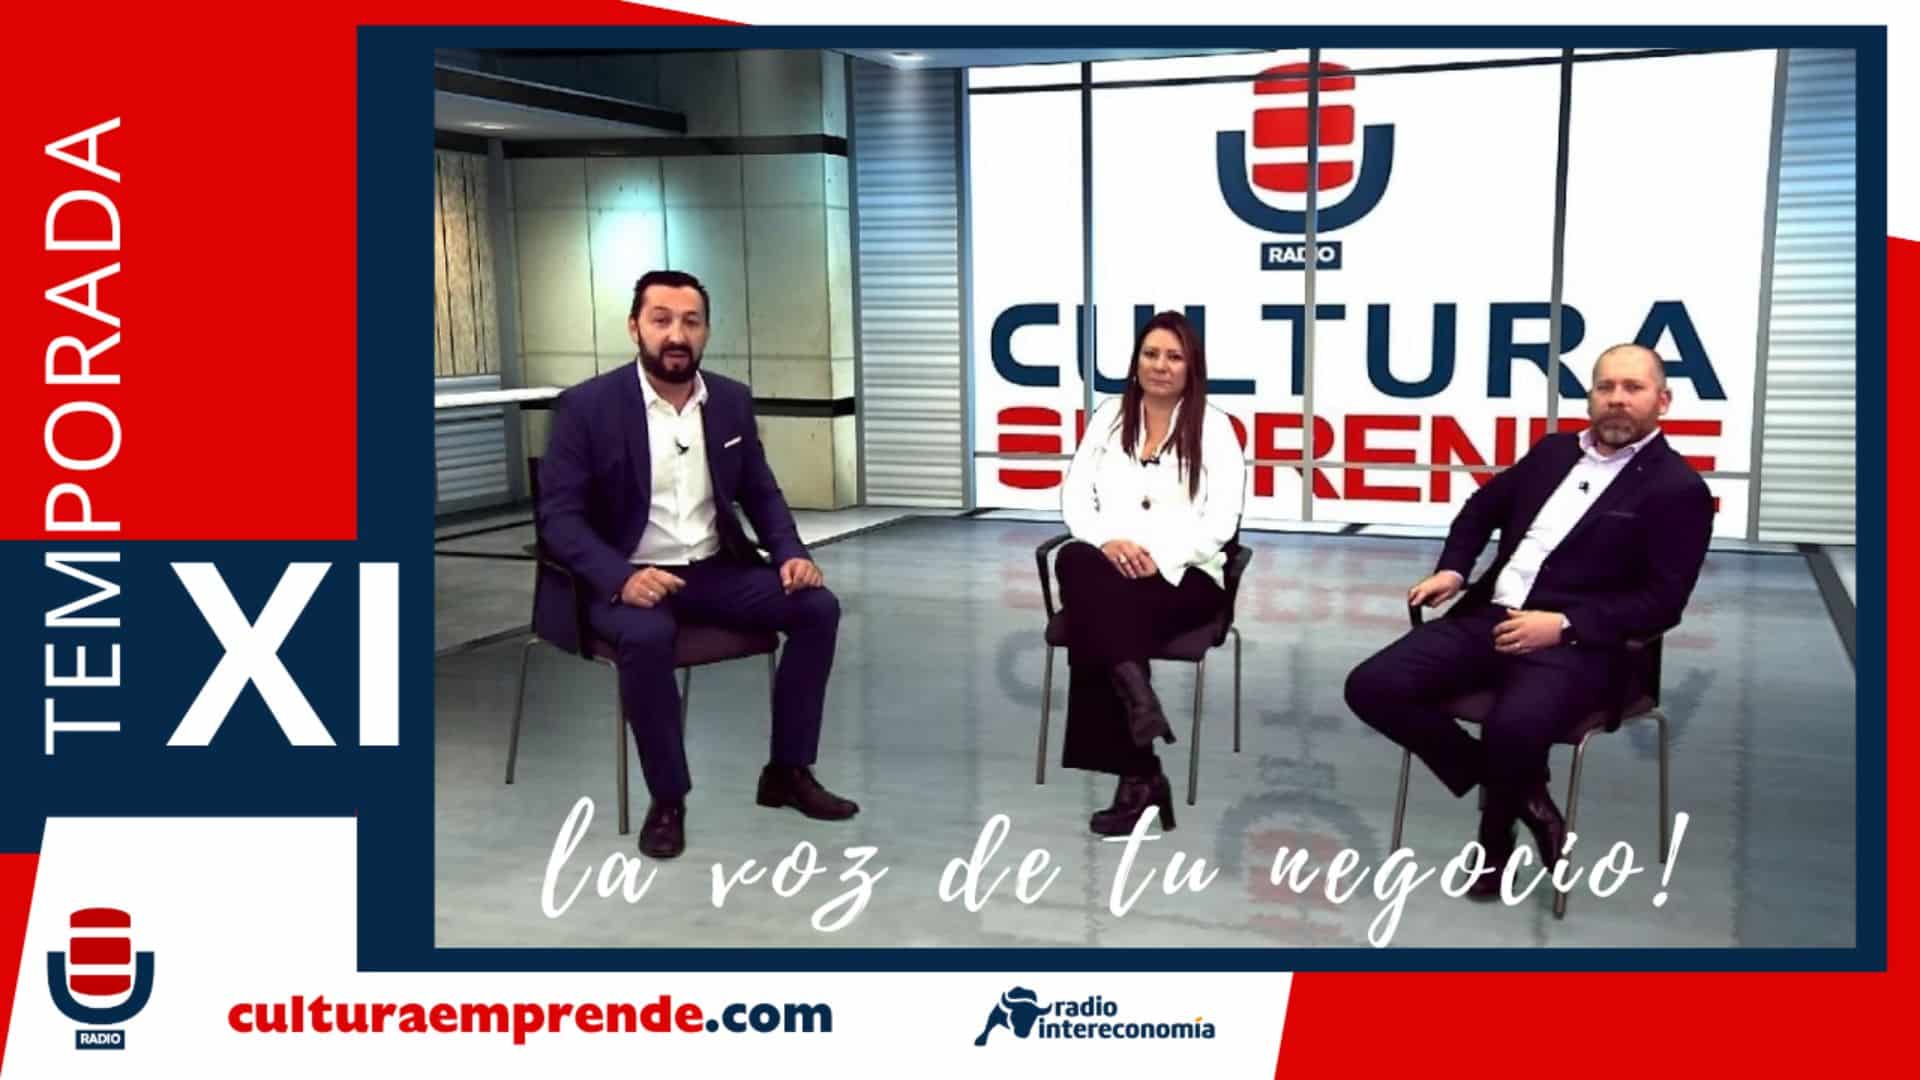 Cultura Emprende regresa el 15 de septiembre para seguir inspirando, impulsando y conectando negocios y empresas de toda España